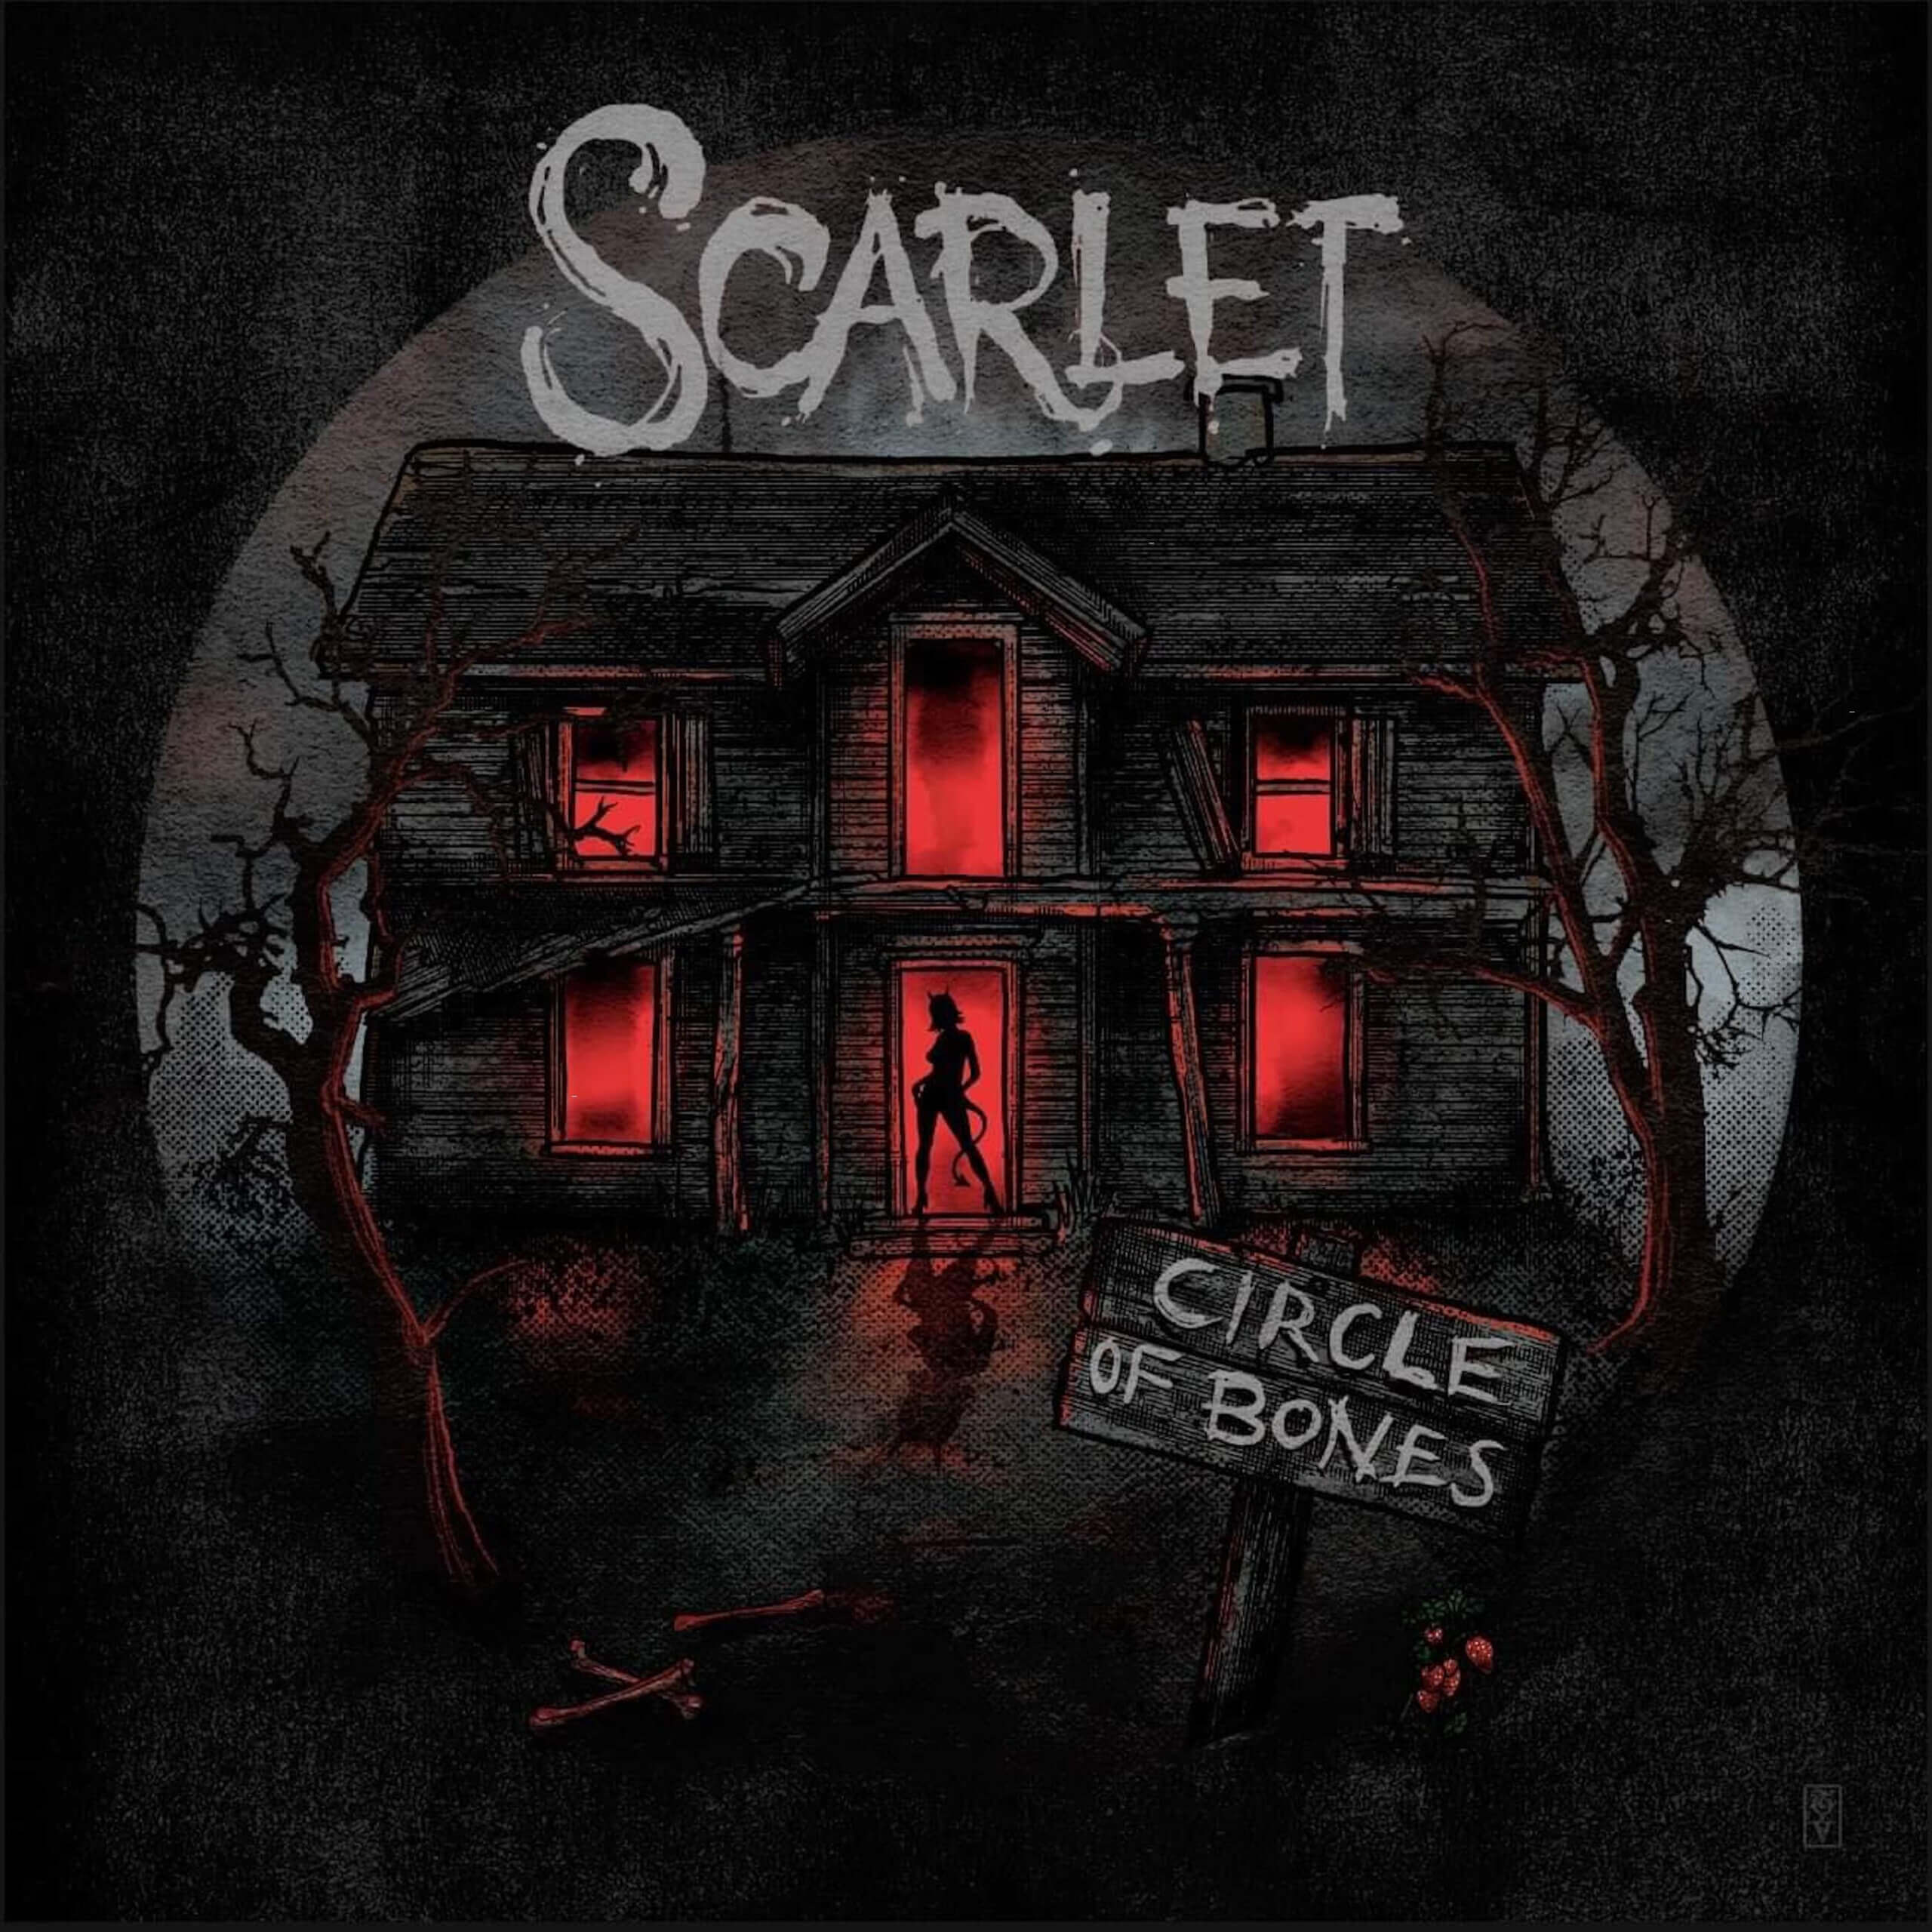 Scarlet - Circle of Bones